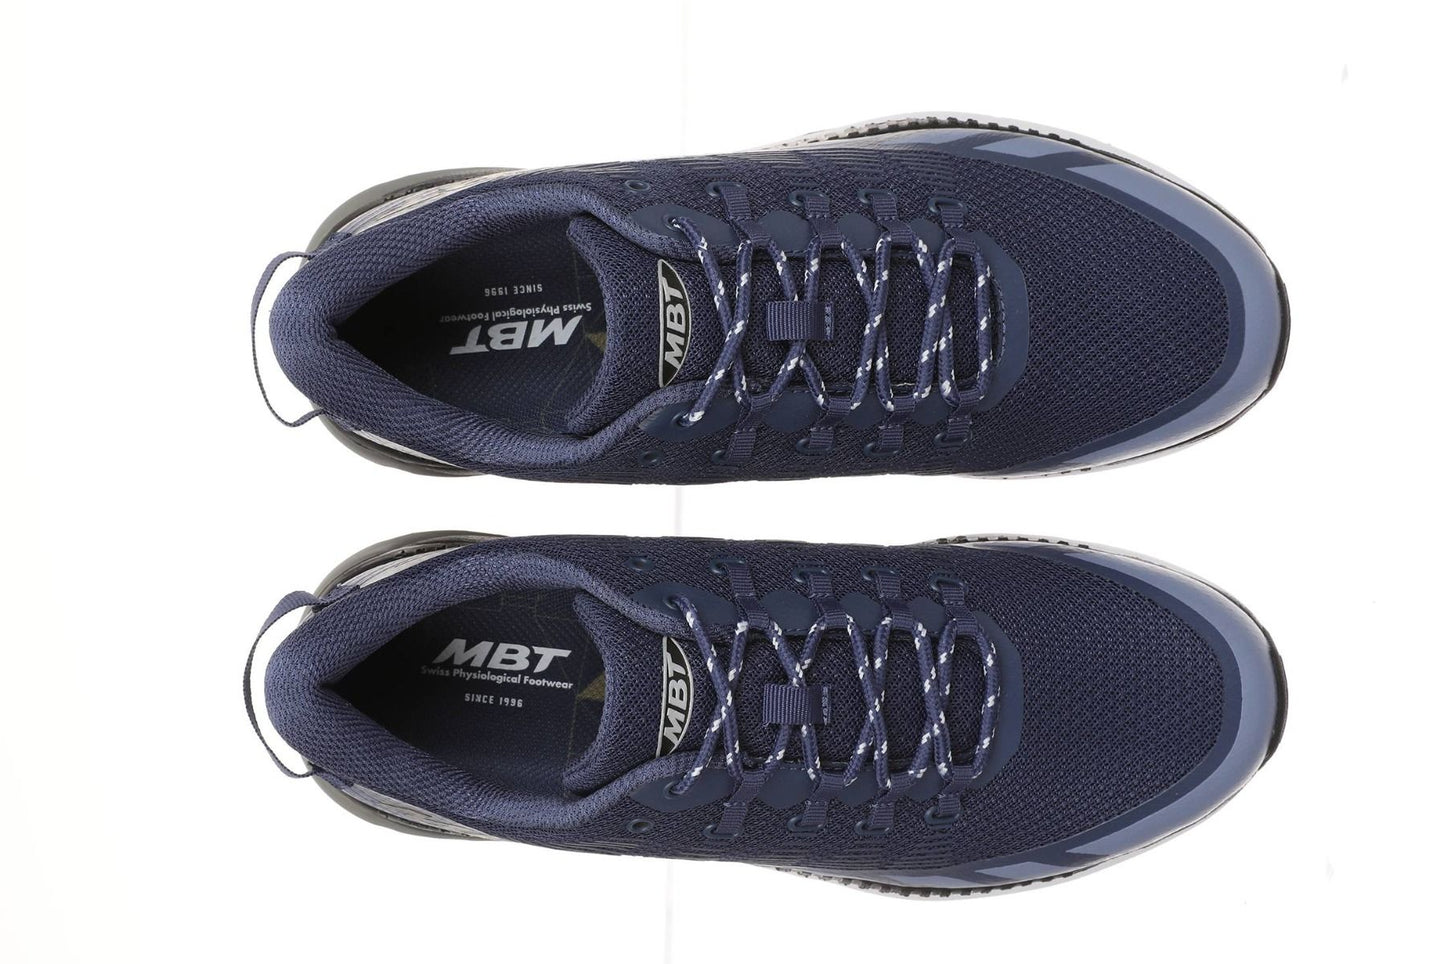 MBT MTR-1500 trainer scarpe da corsa da uomo